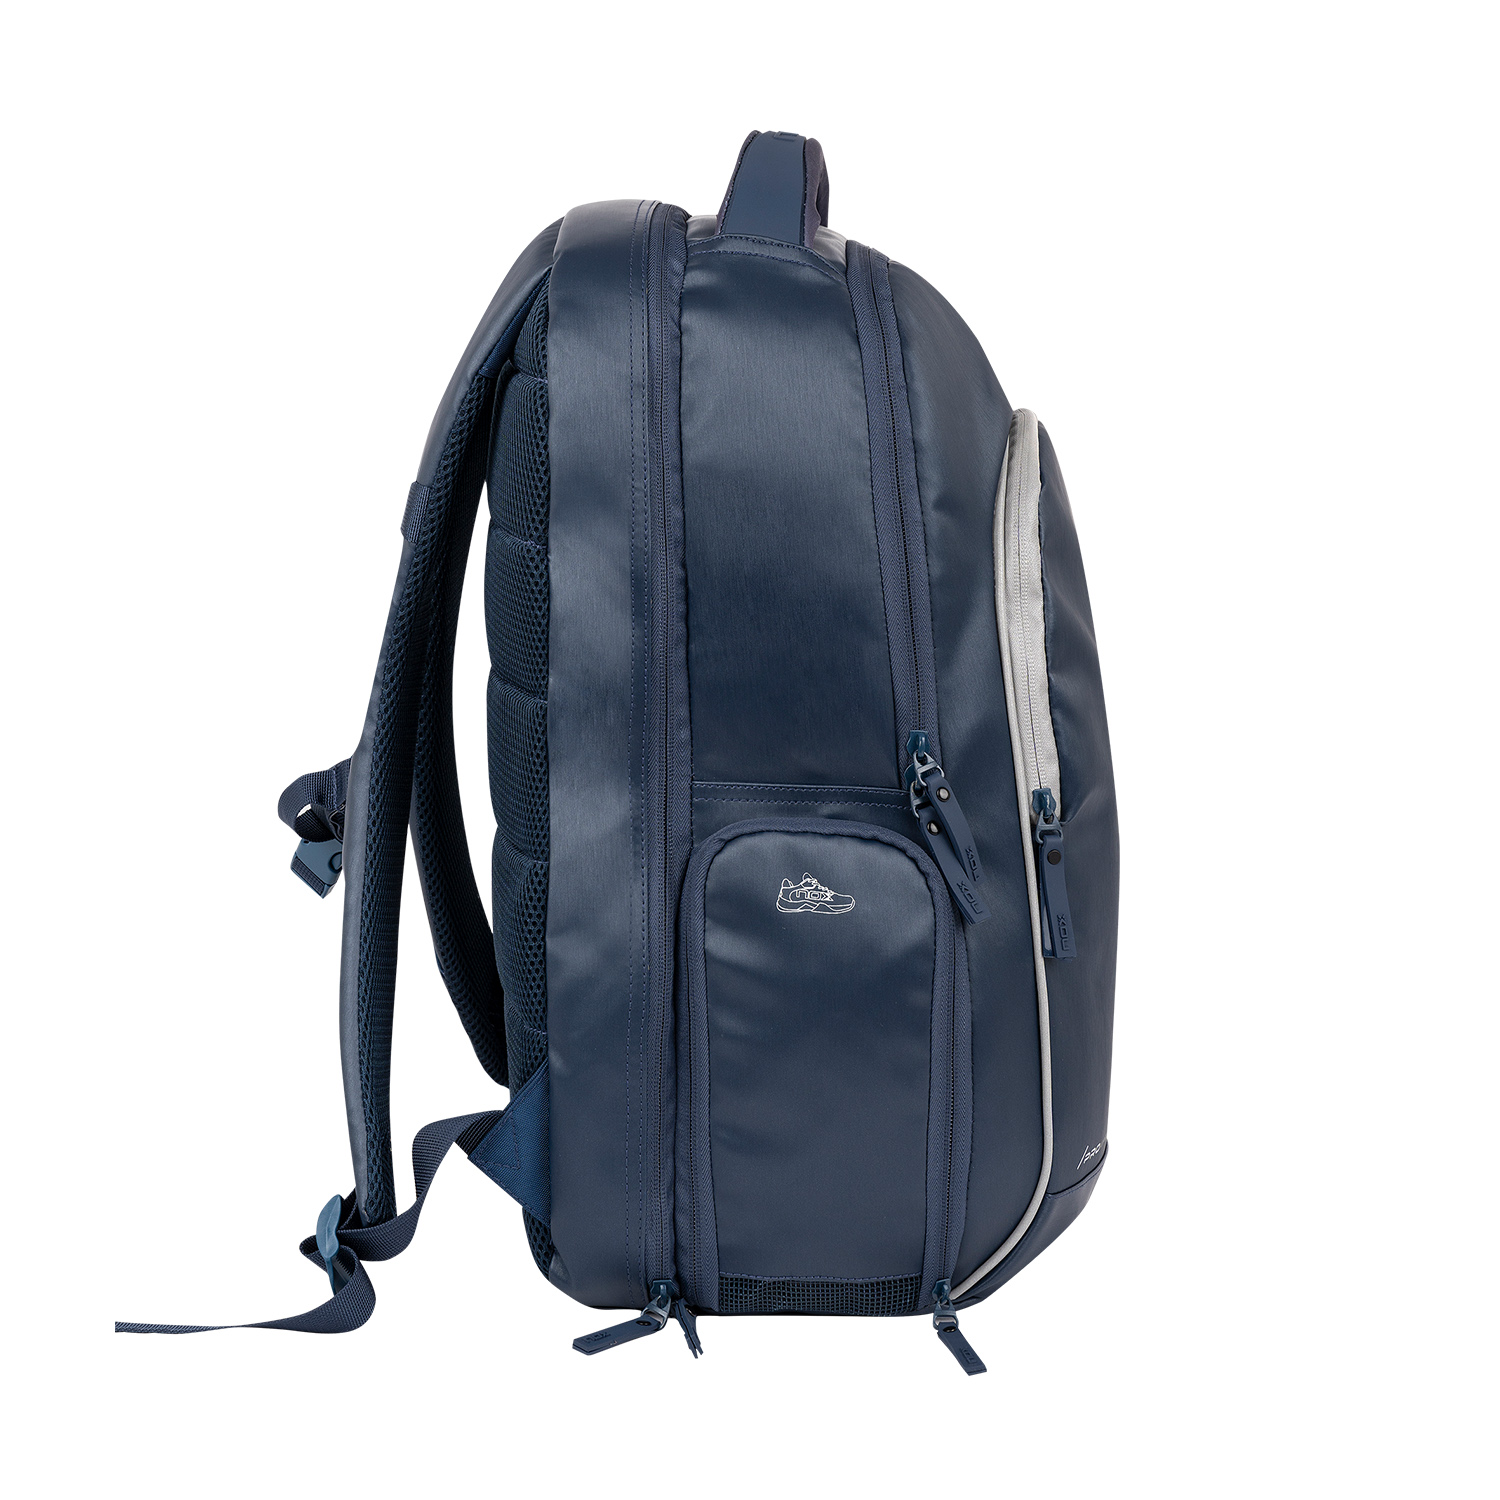 NOX Pro Backpack - Blue